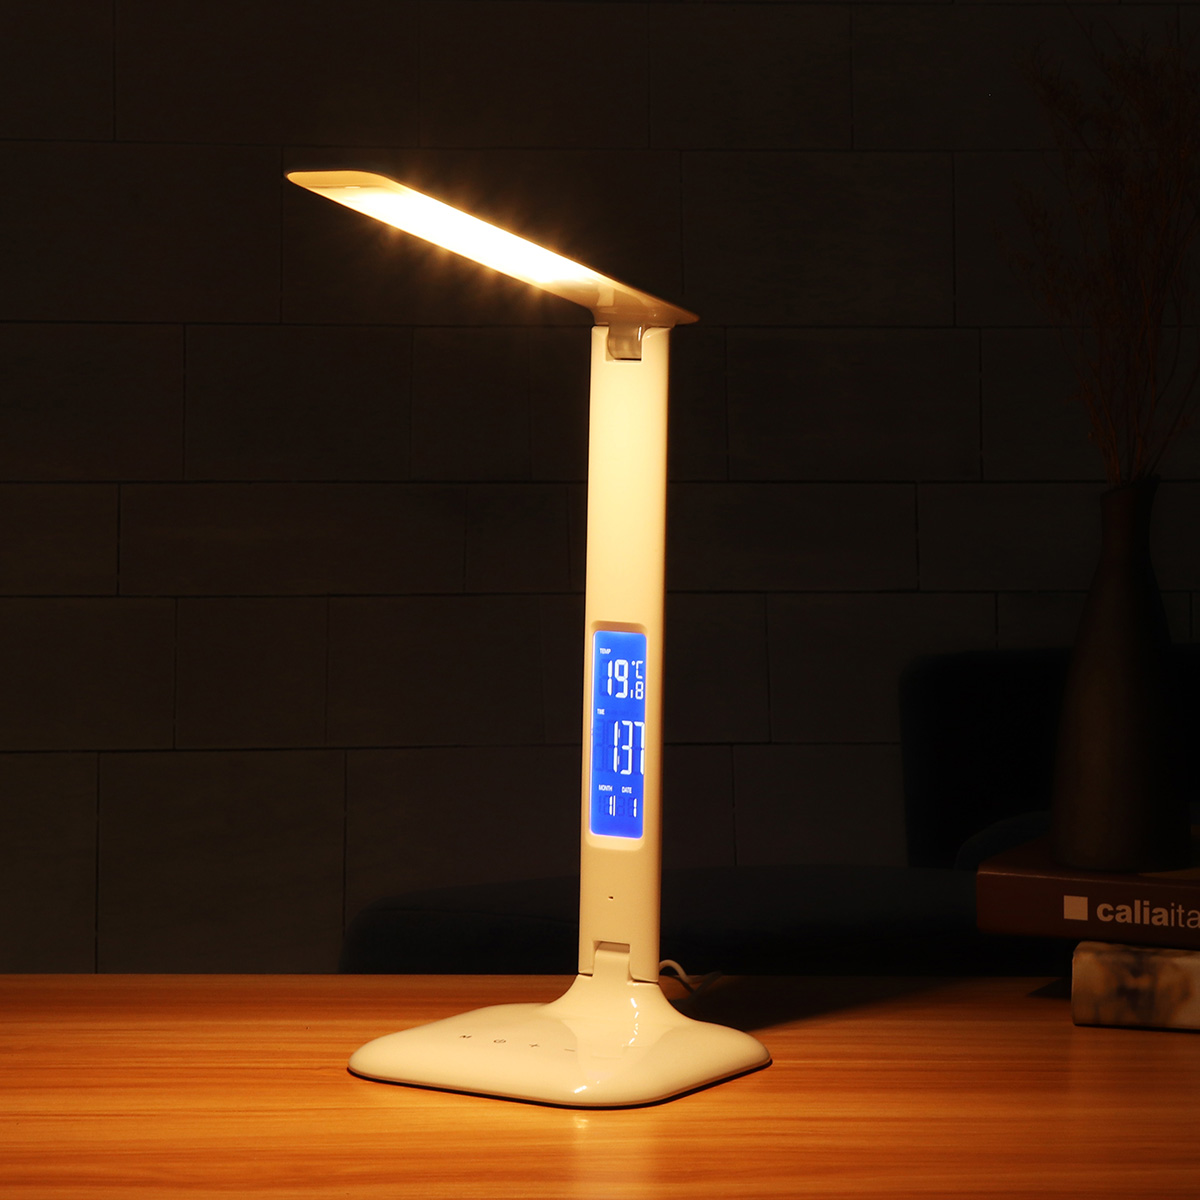 14-LED-Desk-Lamp-USB-Port-Folding-Reading-Lamp-Dimmer-Touch-Control-Light-1655539-2